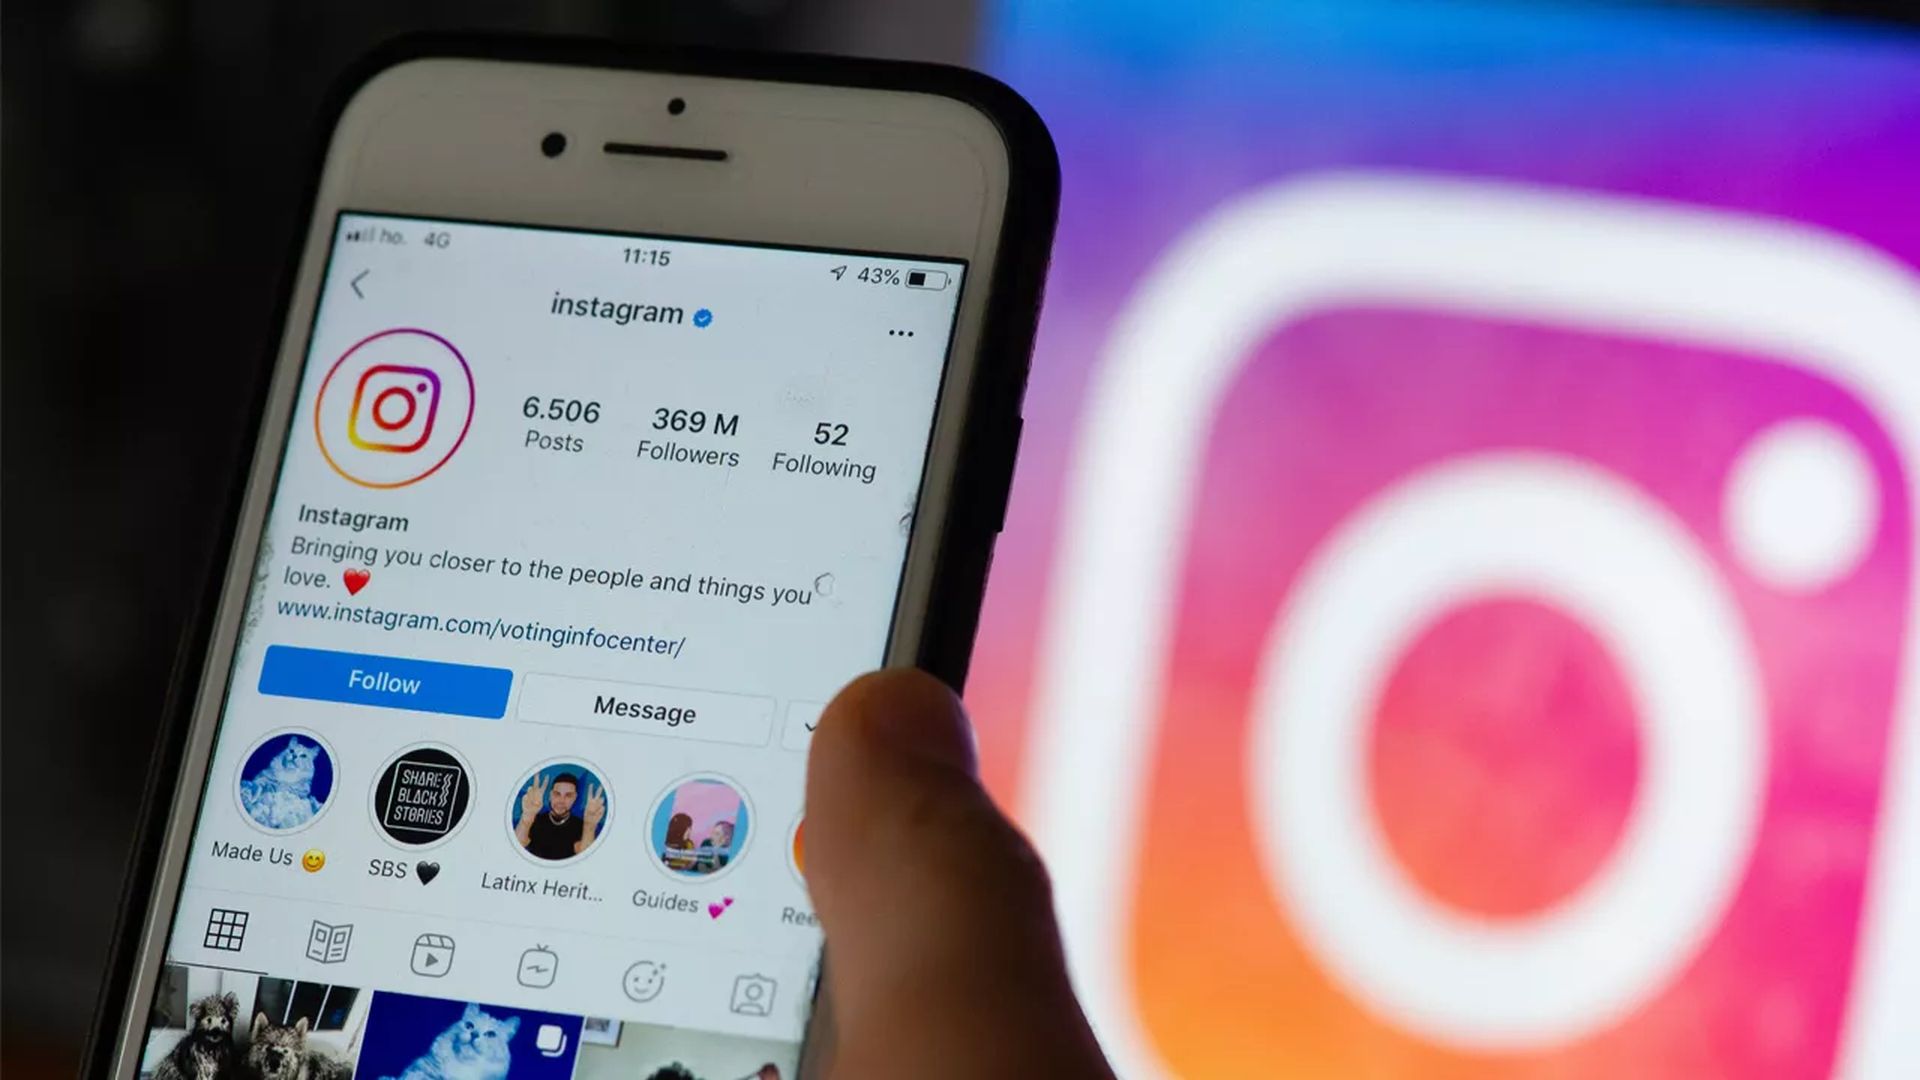 W tym artykule omówimy, jak publikować GIF na Instagramie, abyś mógł udostępniać swoje ulubione GIF-y swoim obserwatorom.